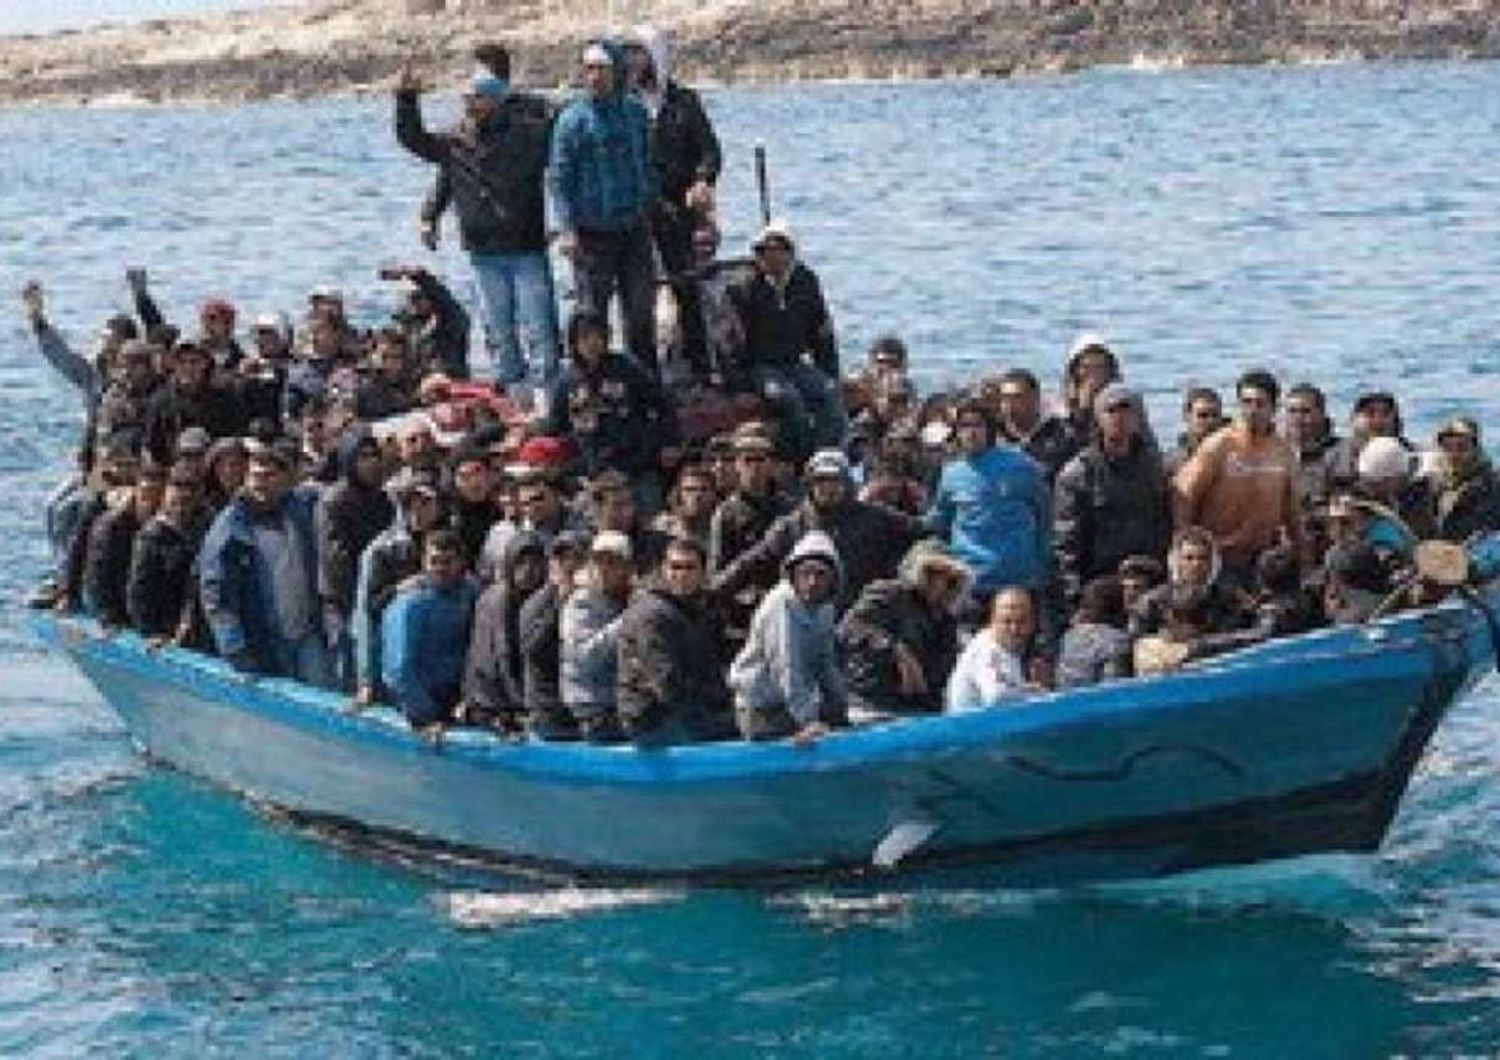 Mediterraneo cimitero di migranti, 700 morti in 5 giorni